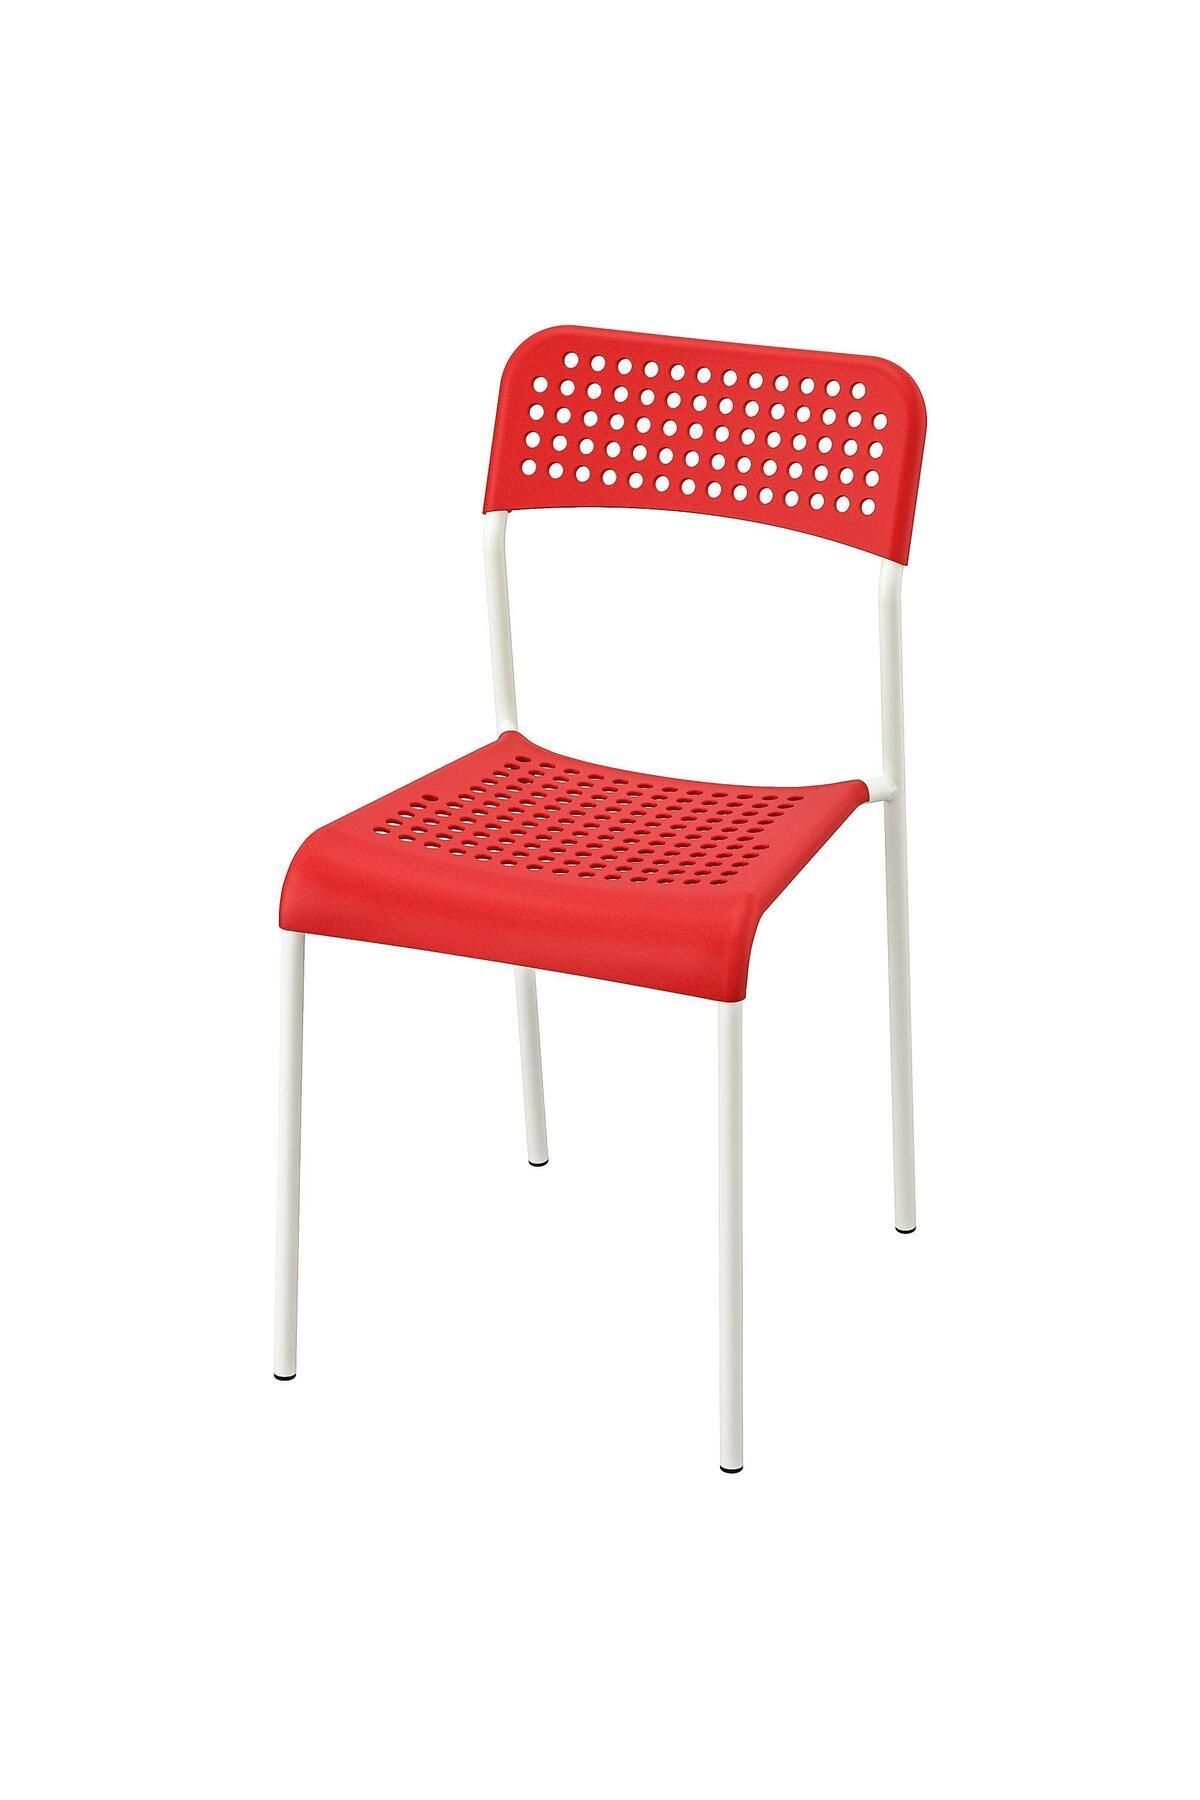 IKEA Plastik Sandalye, Kırmızı-beyaz Renk Meridyendukkan Salon-mutfak Sandalyesi